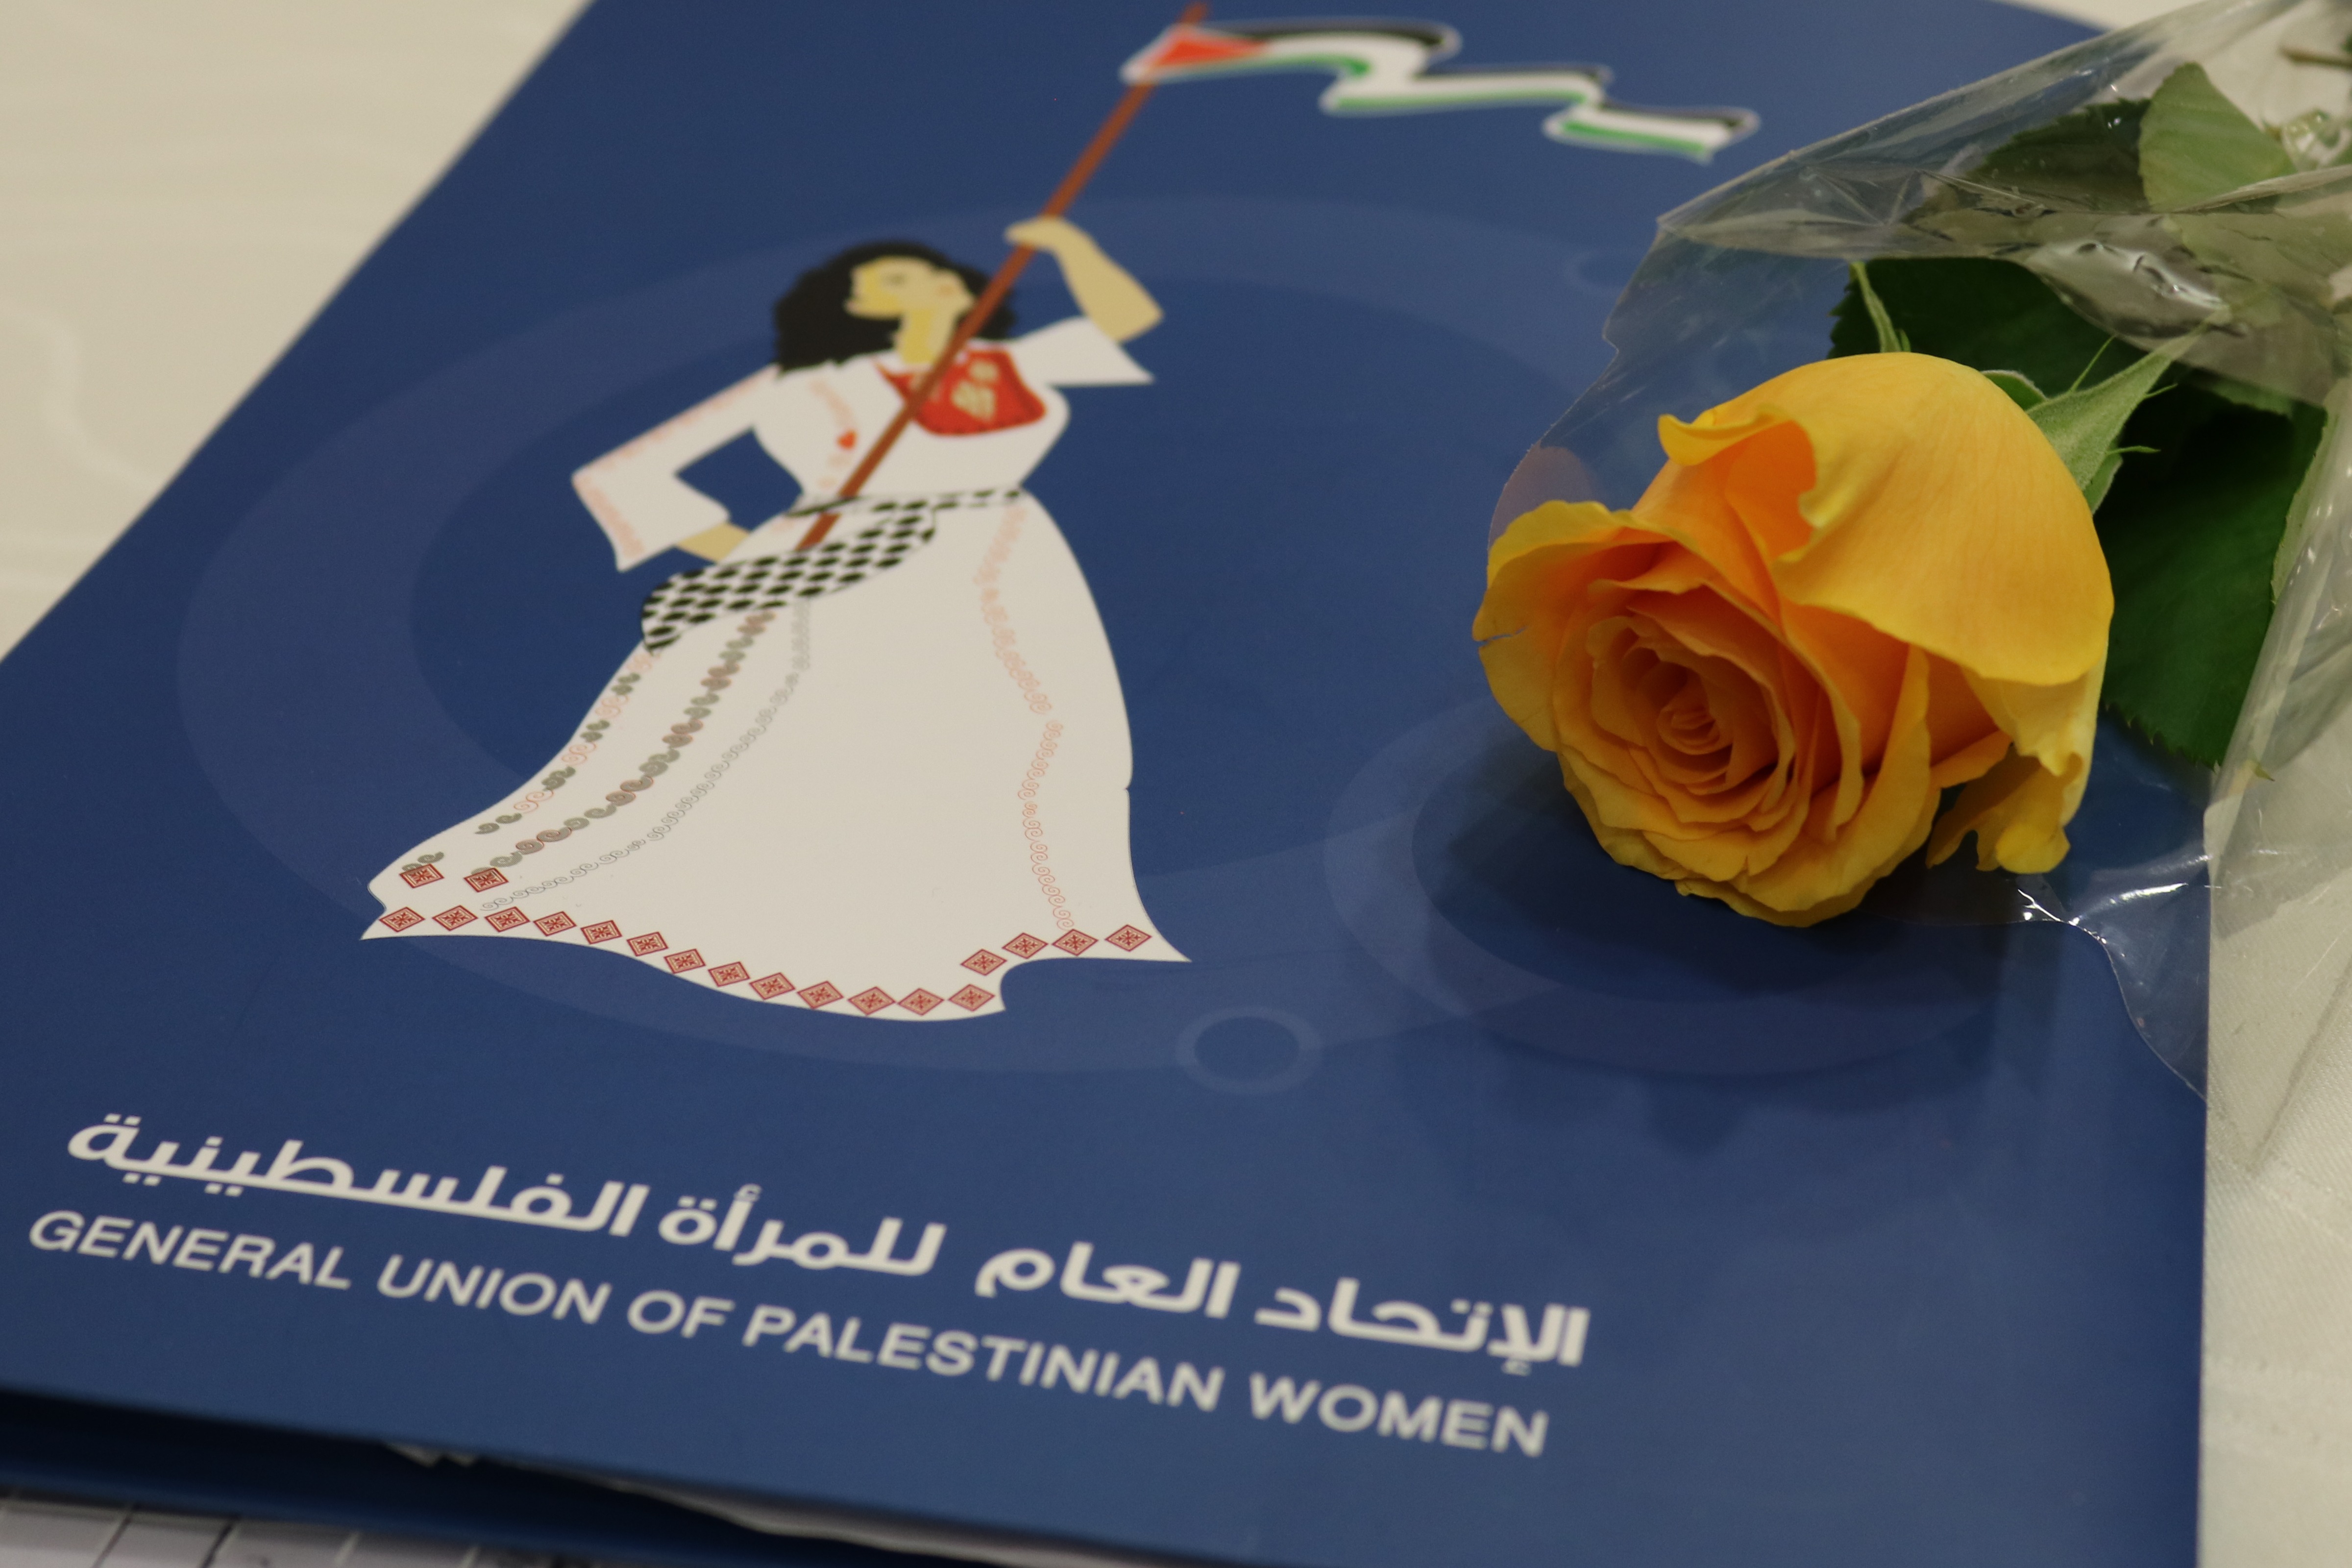 مذكرة مقدمة من   الاتحاد العام للمرأة الفلسطينية  و   المؤسسات والمراكز النسوية والحقوقية إلى هيئة الأمم المتحدة في  22 ديسيمبر    2019